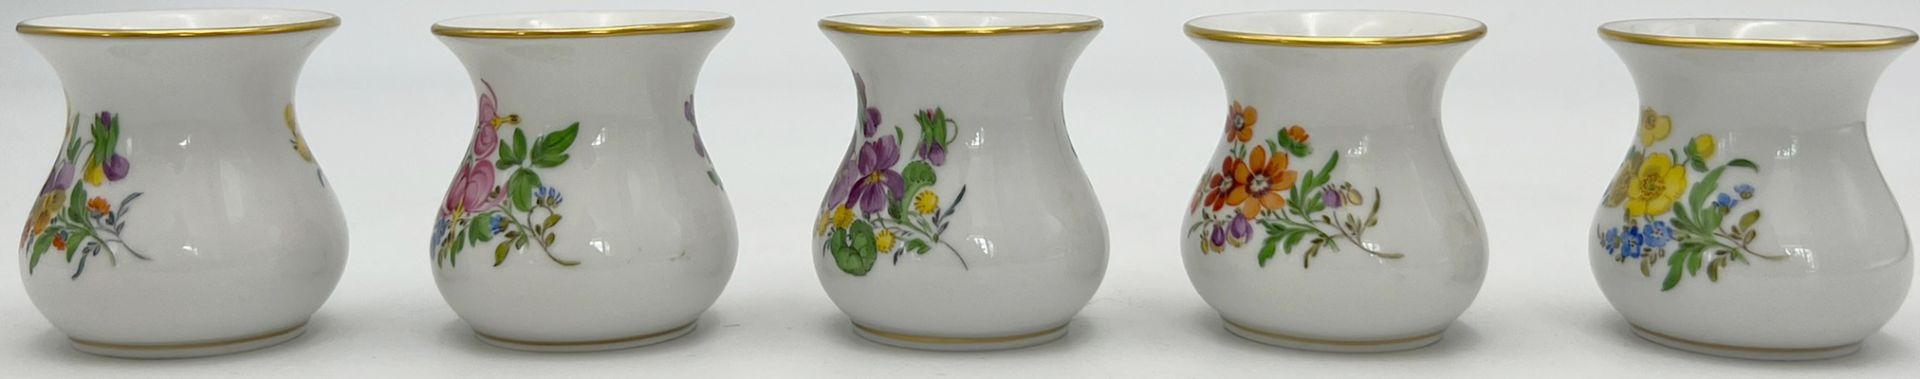 Fünf kleine Vasen. Meissen. 1. und 3. Wahl. Blumendekor. - Bild 2 aus 10